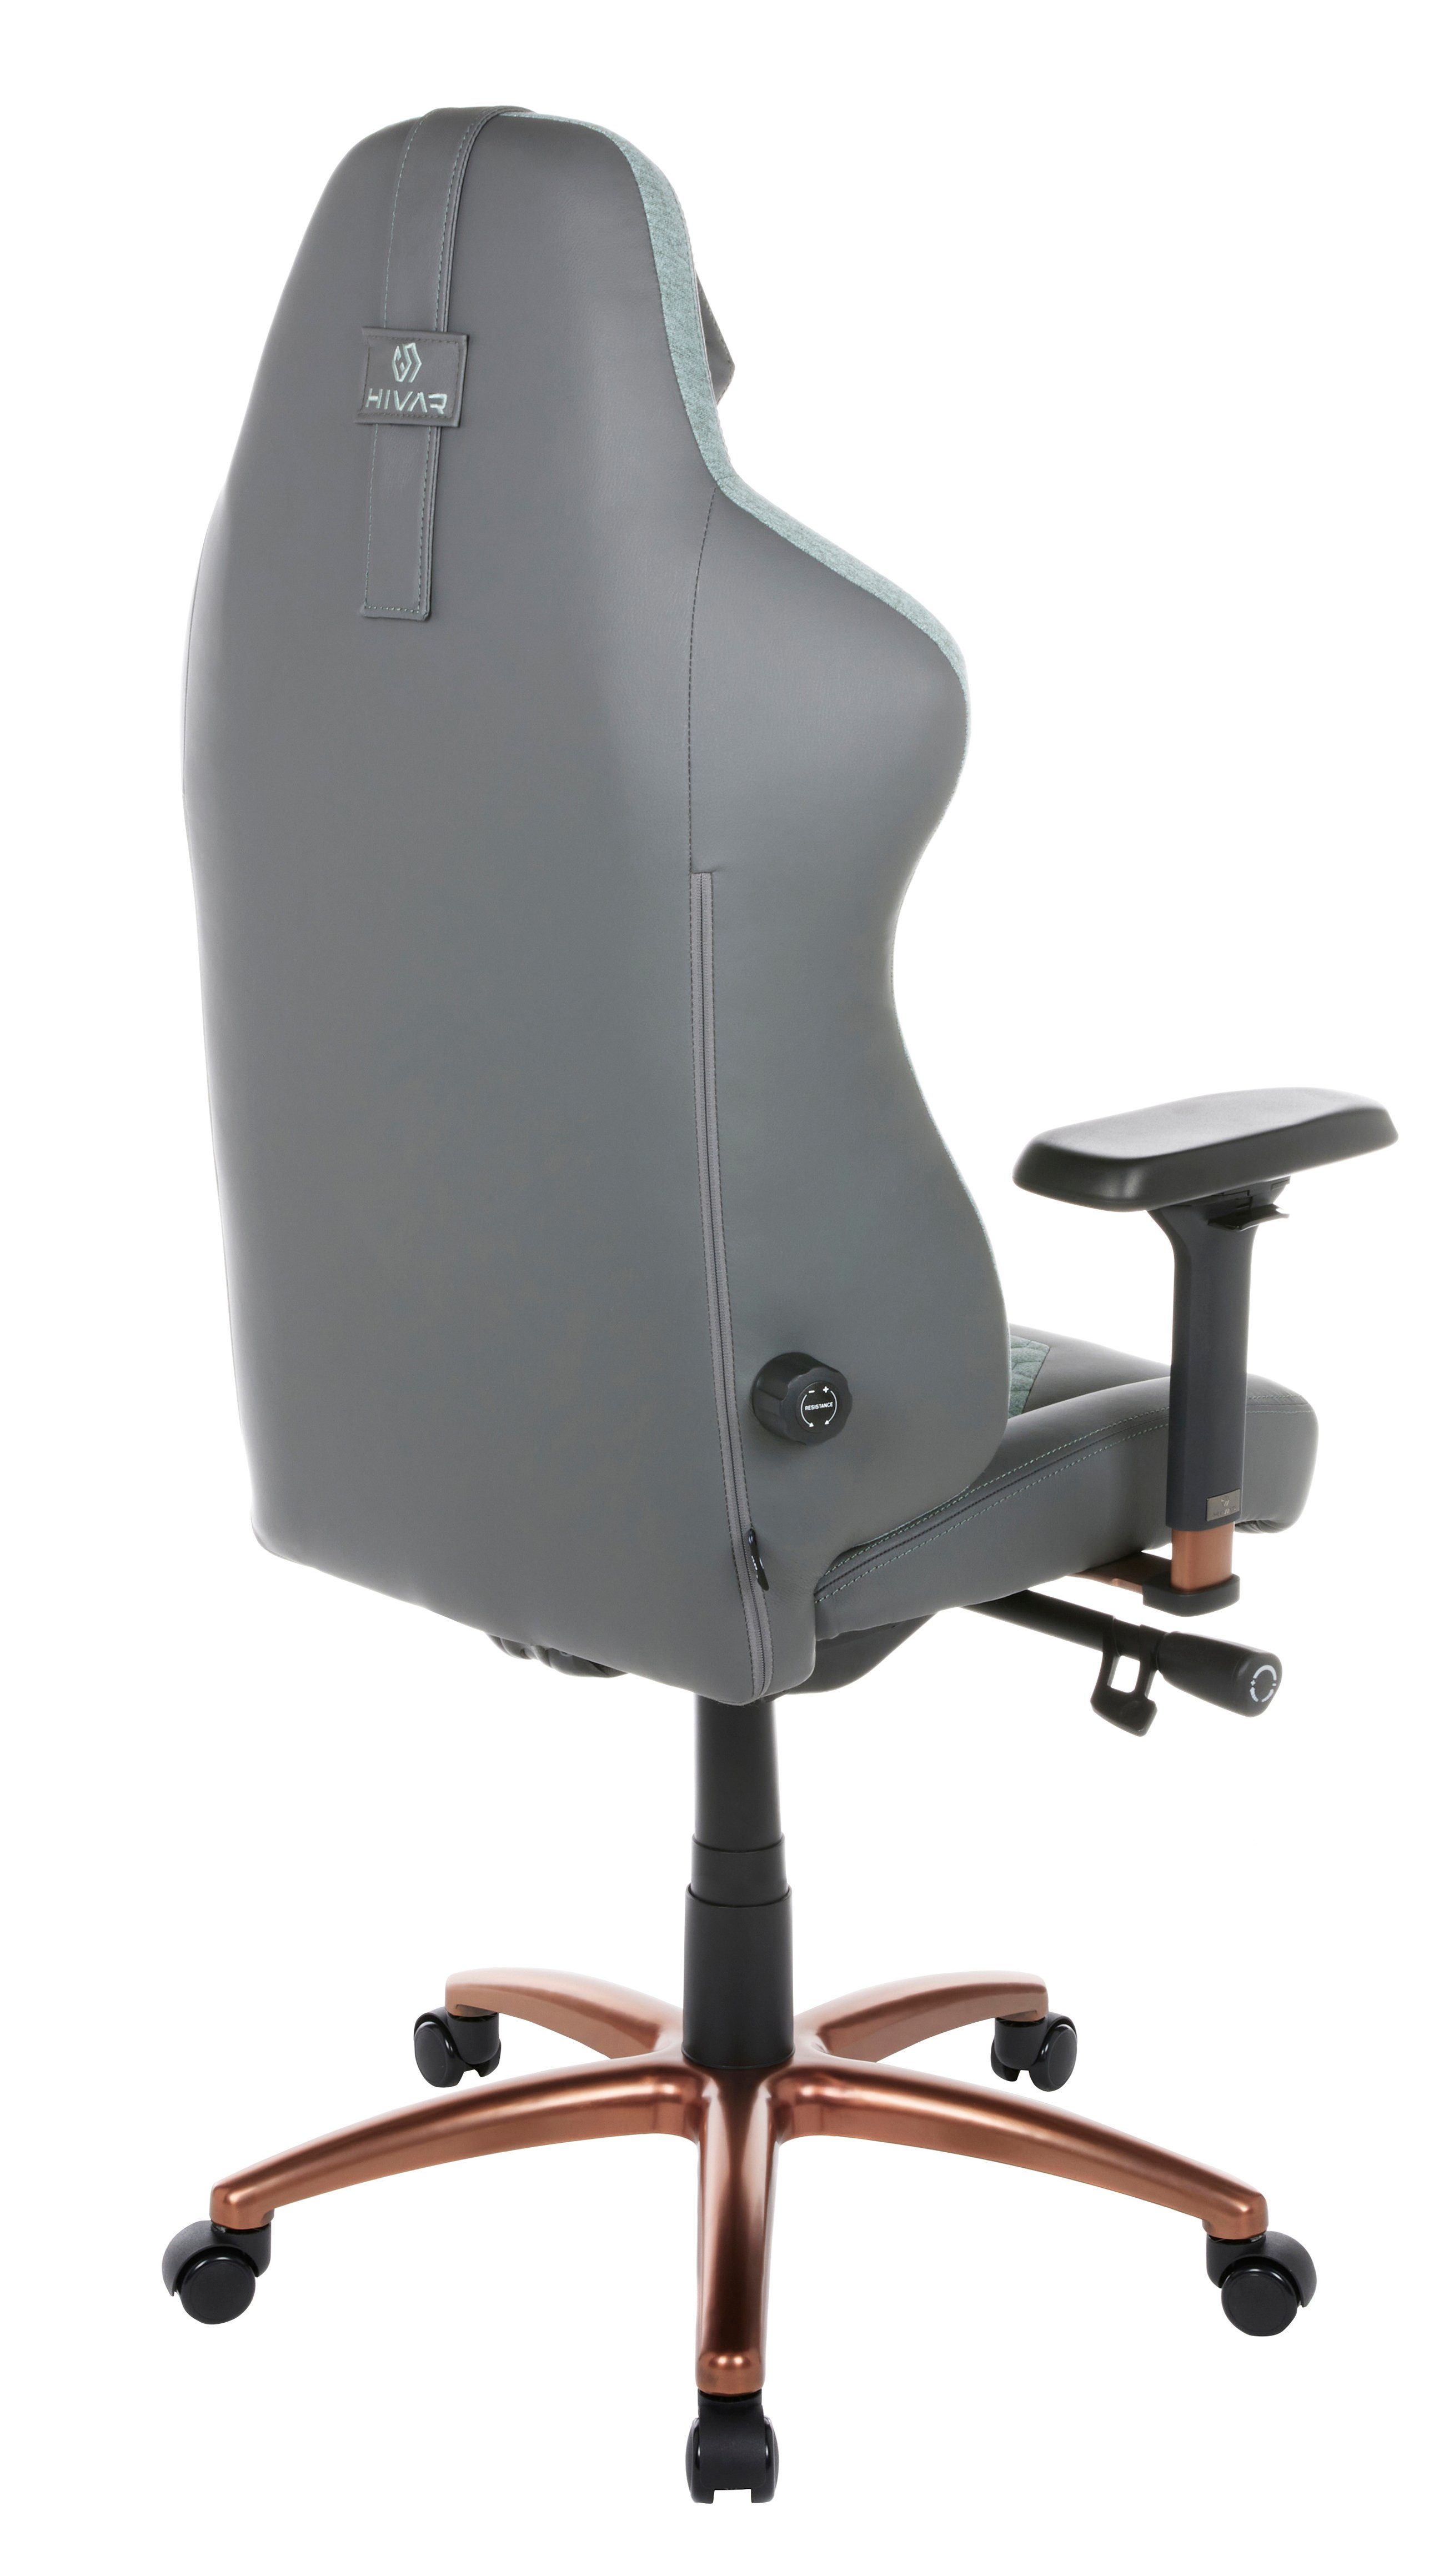 HIVAR Gaming-Stuhl höhenverstellbare ORBICAL Sitztiefenverstellung, AURORA, Fußkreuz: kg Rückenlehne, Synchronmechanik, geprüft, Belastbarkeit Copper Wippwiderstand, Armlehnen, 130 TÜV 4D Lordosenstütze